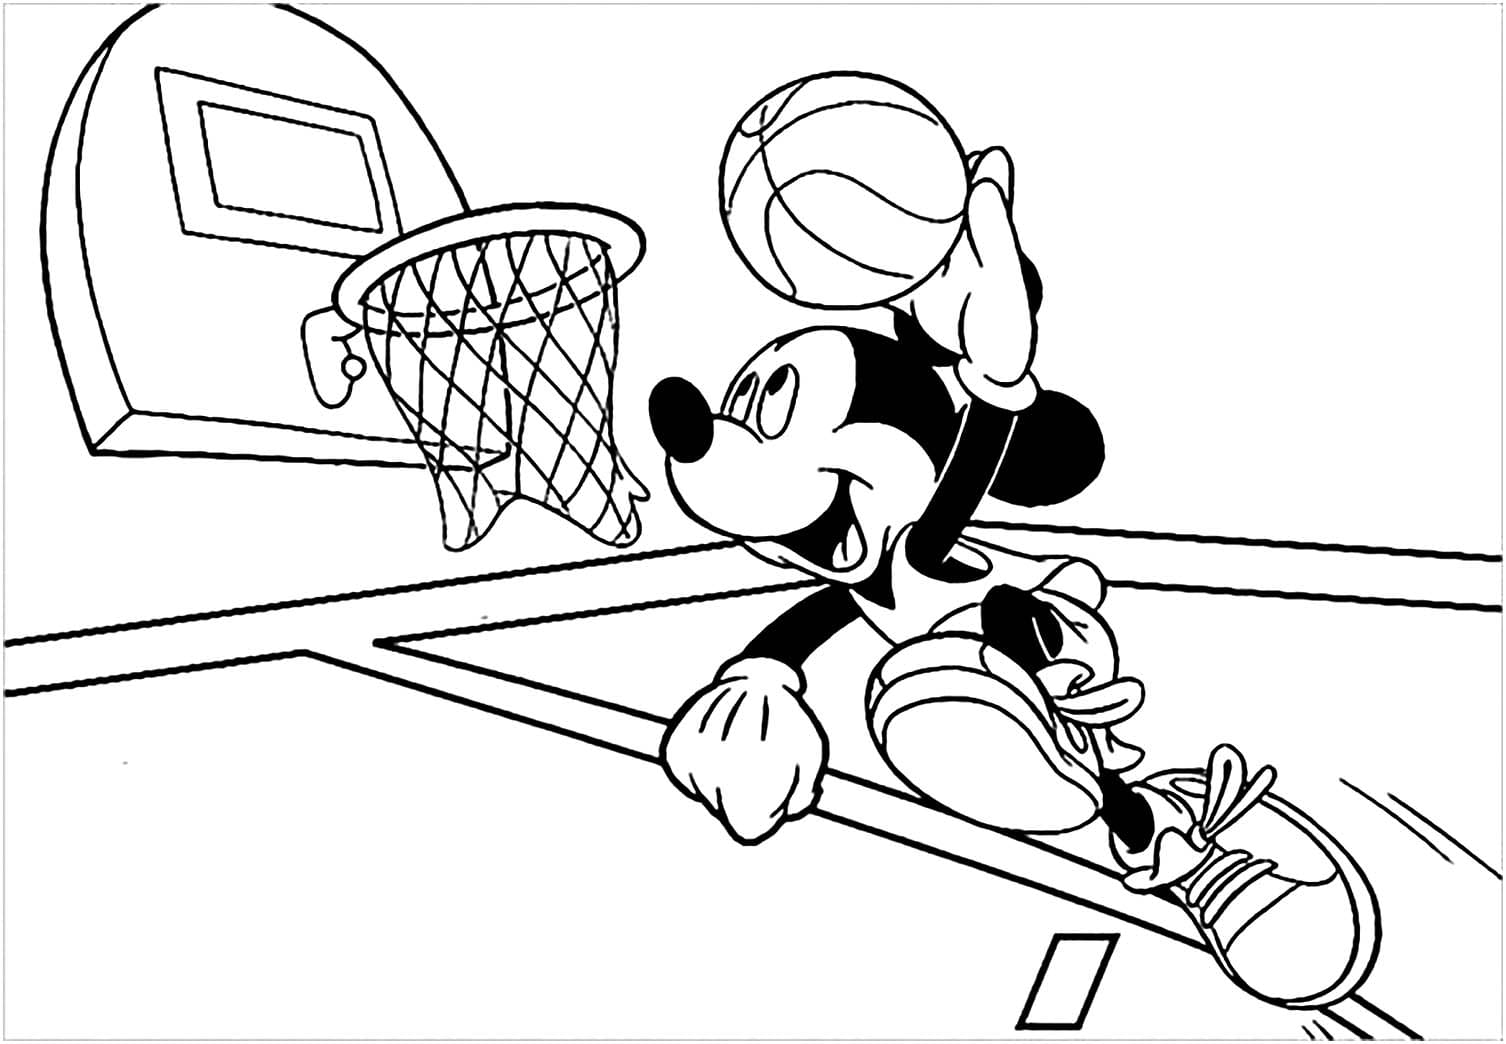 Playing Basketball Image